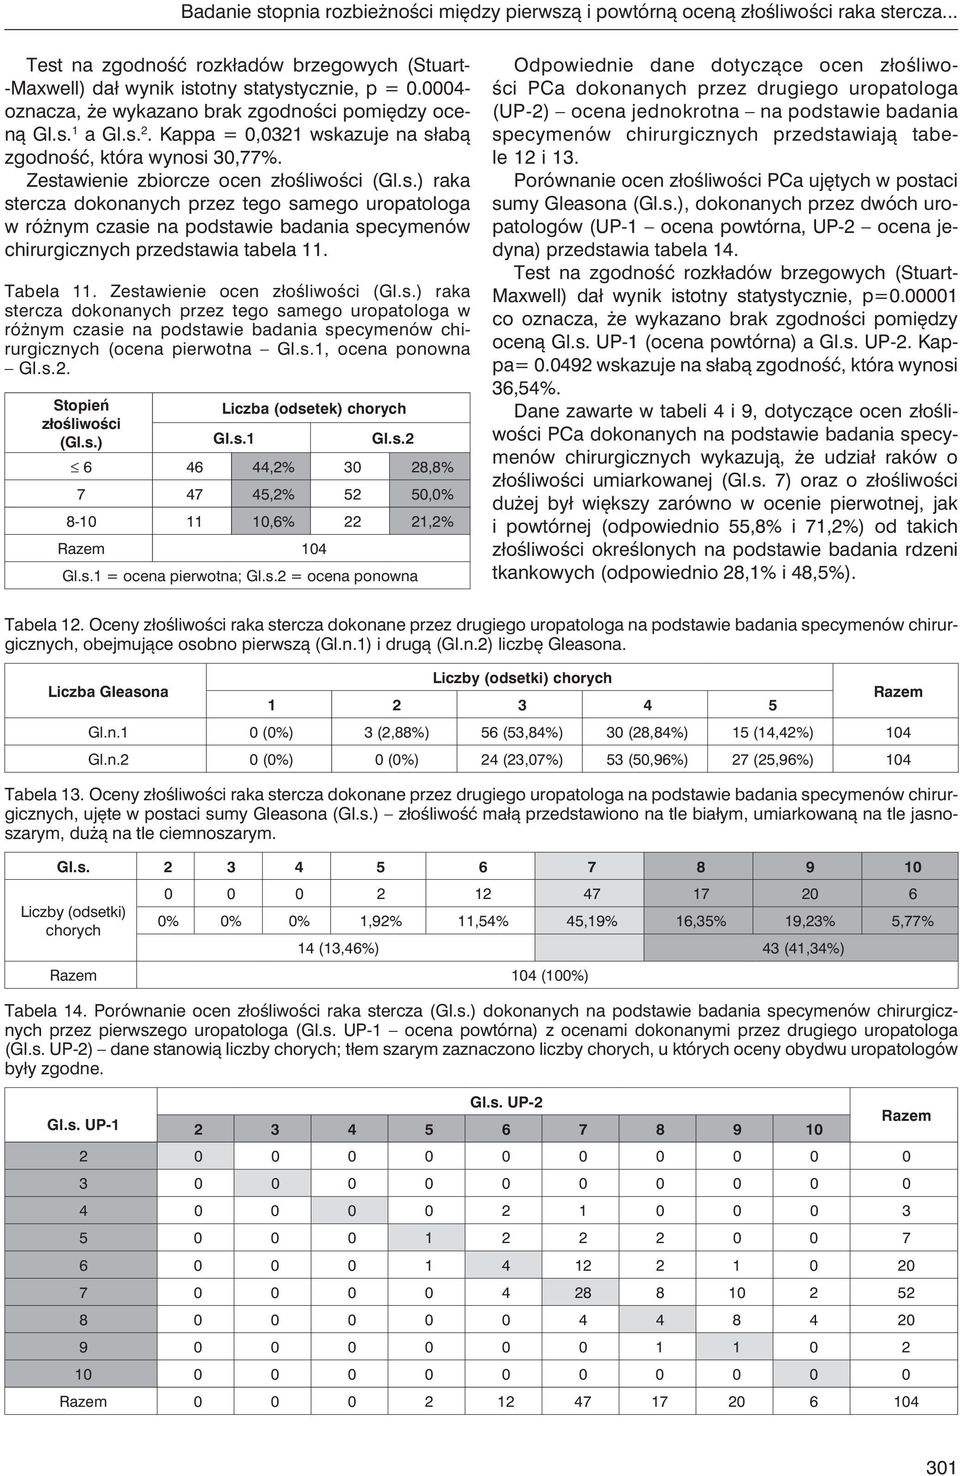 Tabela 11. Zestawienie ocen złośliwości (Gl.s.) raka stercza dokonanych przez tego samego uropatologa w różnym czasie na podstawie badania specymenów chirurgicznych (ocena pierwotna Gl.s.1, ocena ponowna Gl.